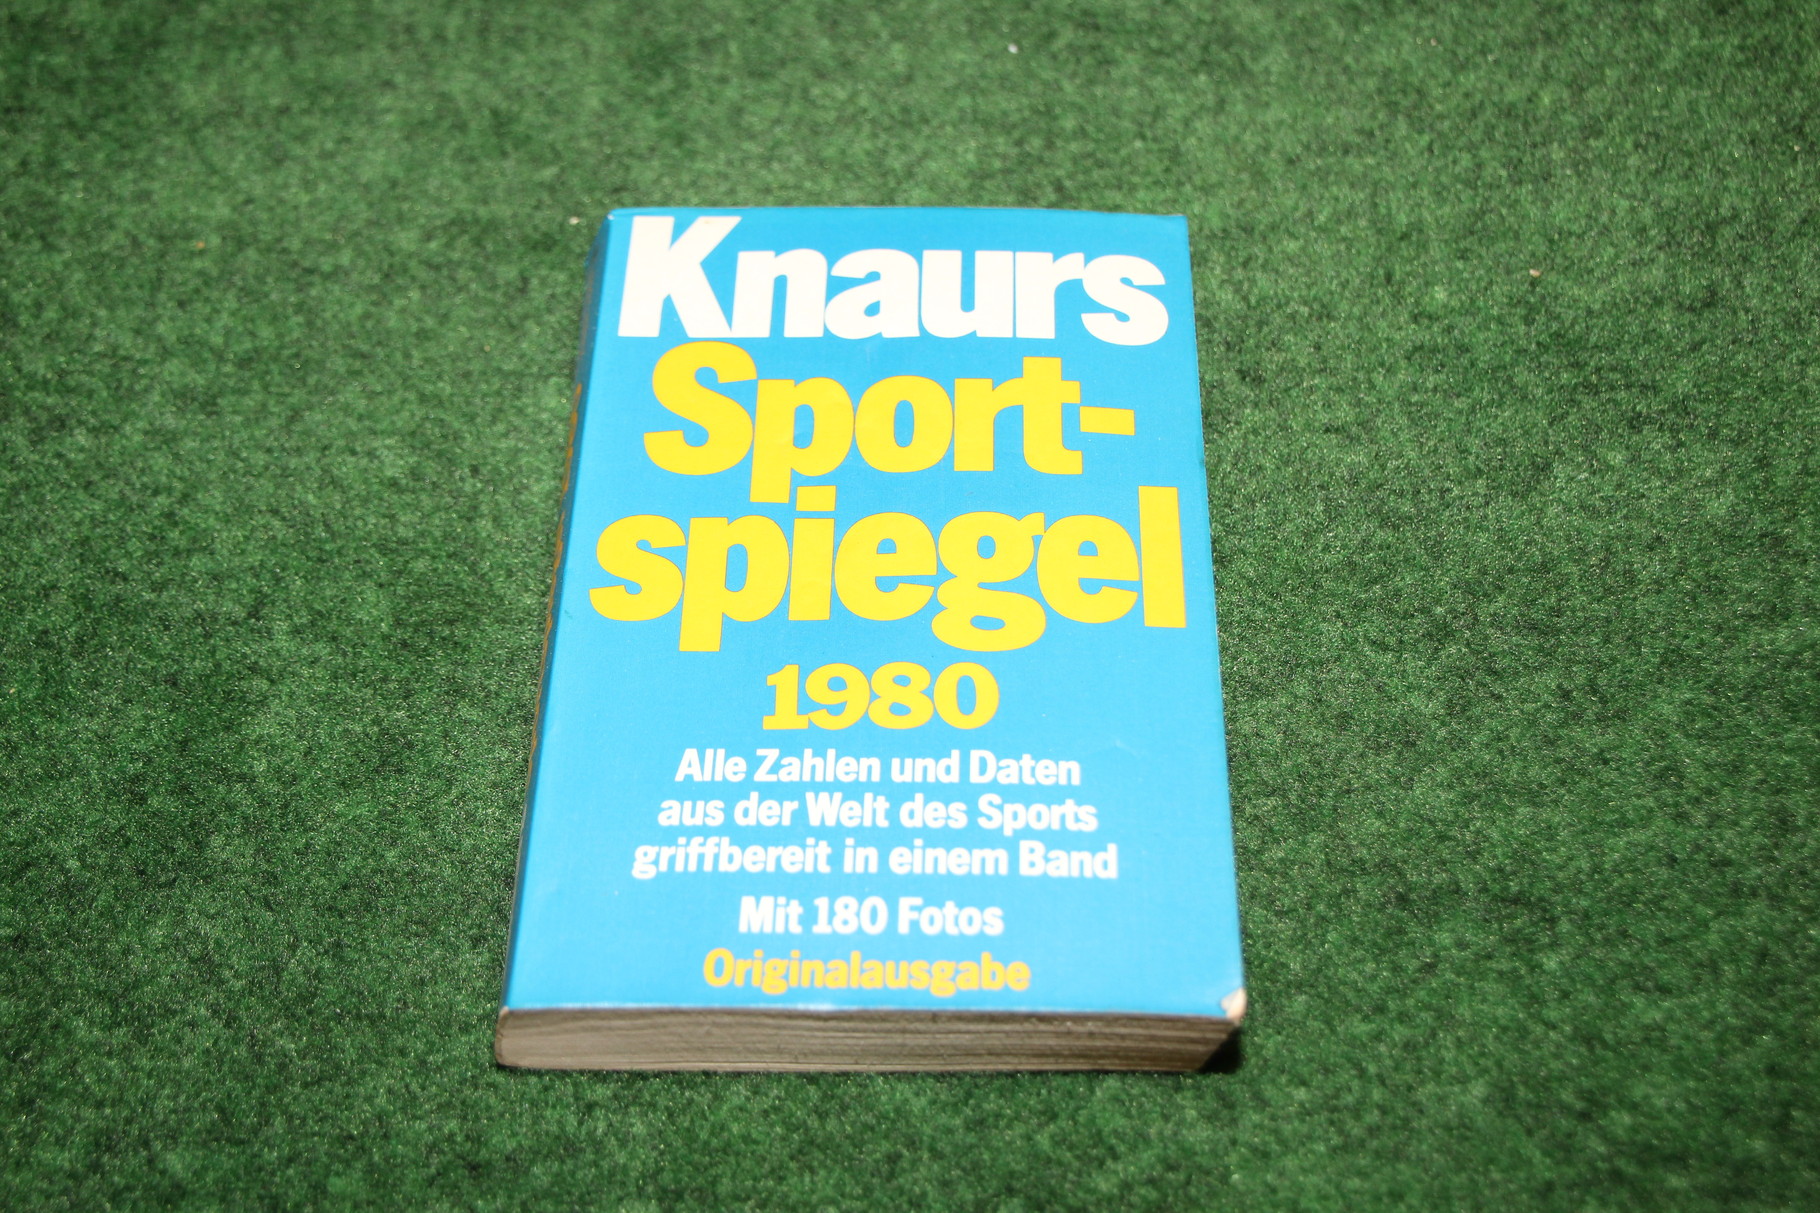 Knaurs Sport Spielgel 1980